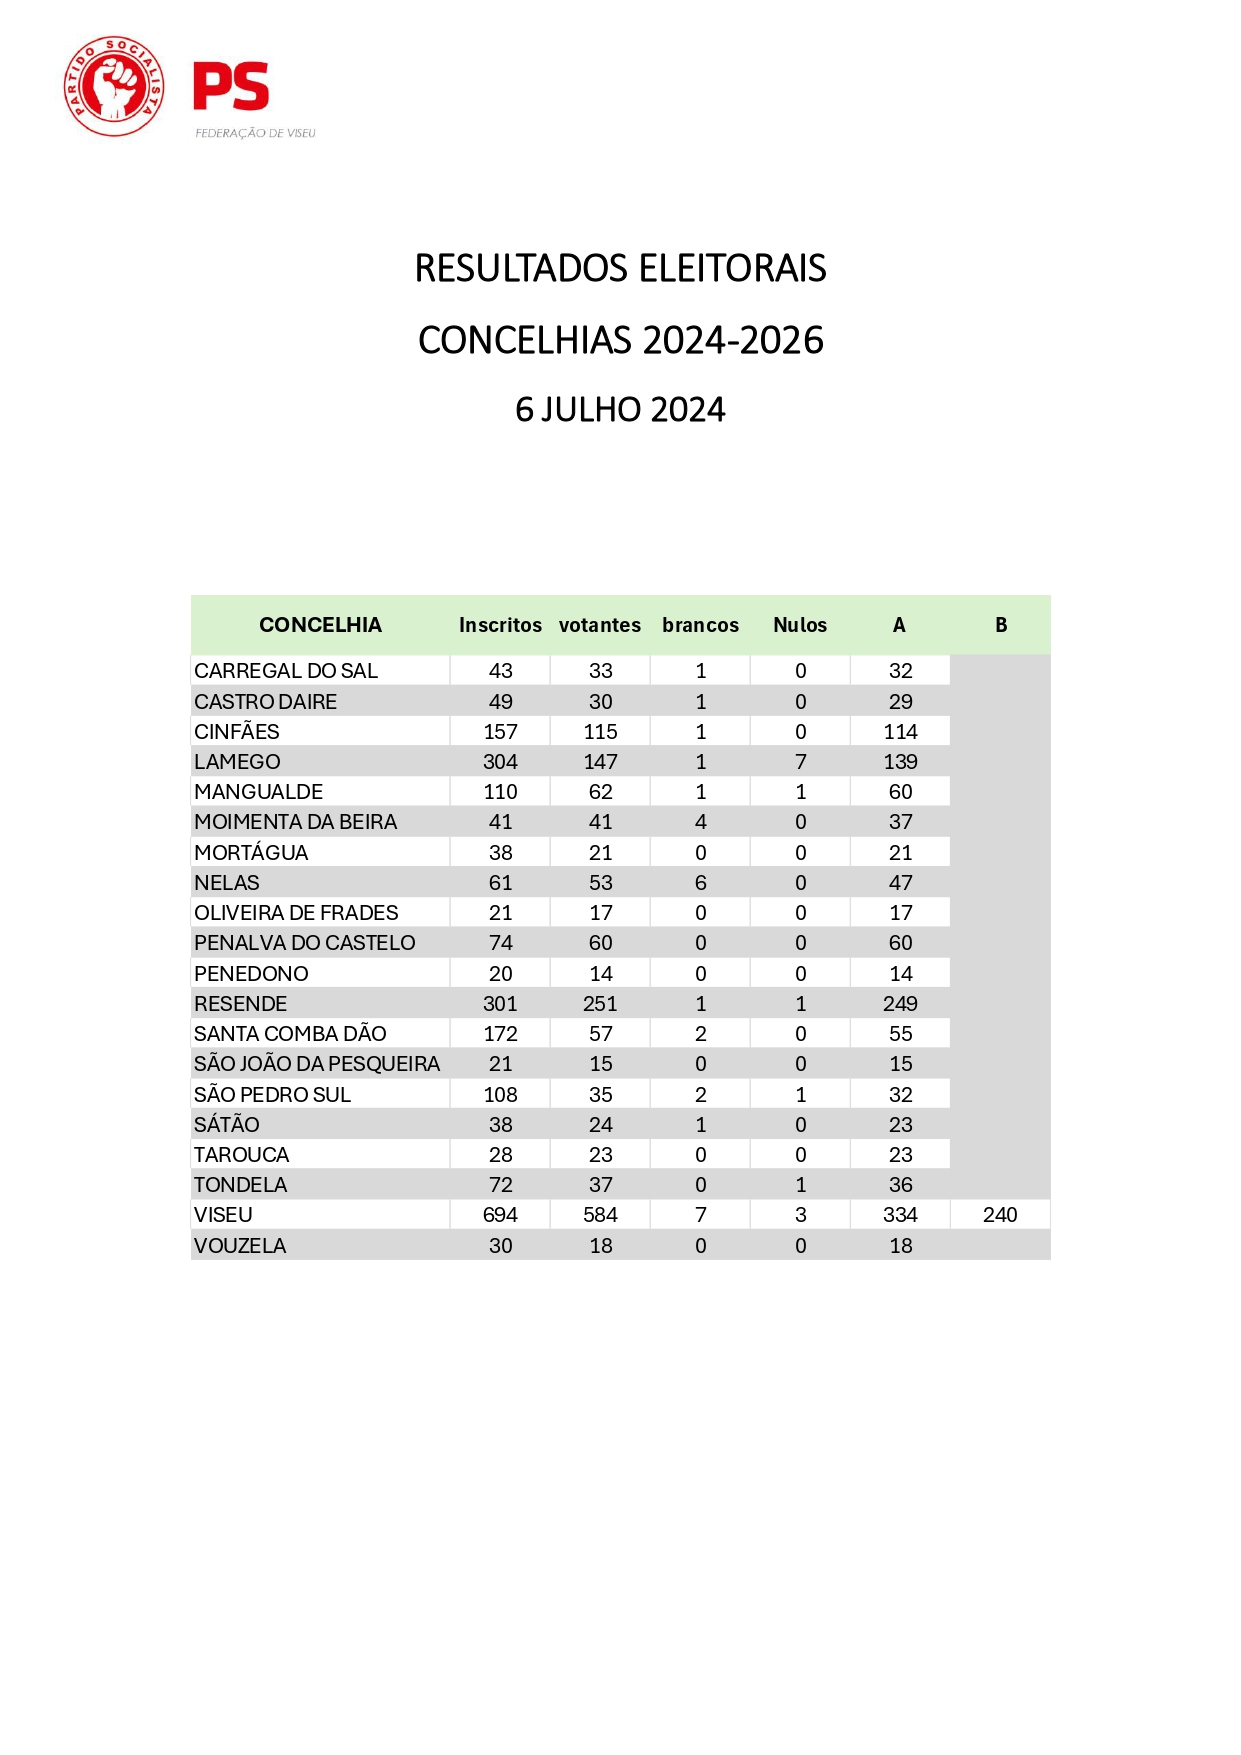 Resultados eleitorais - Concelhias 2024-2026